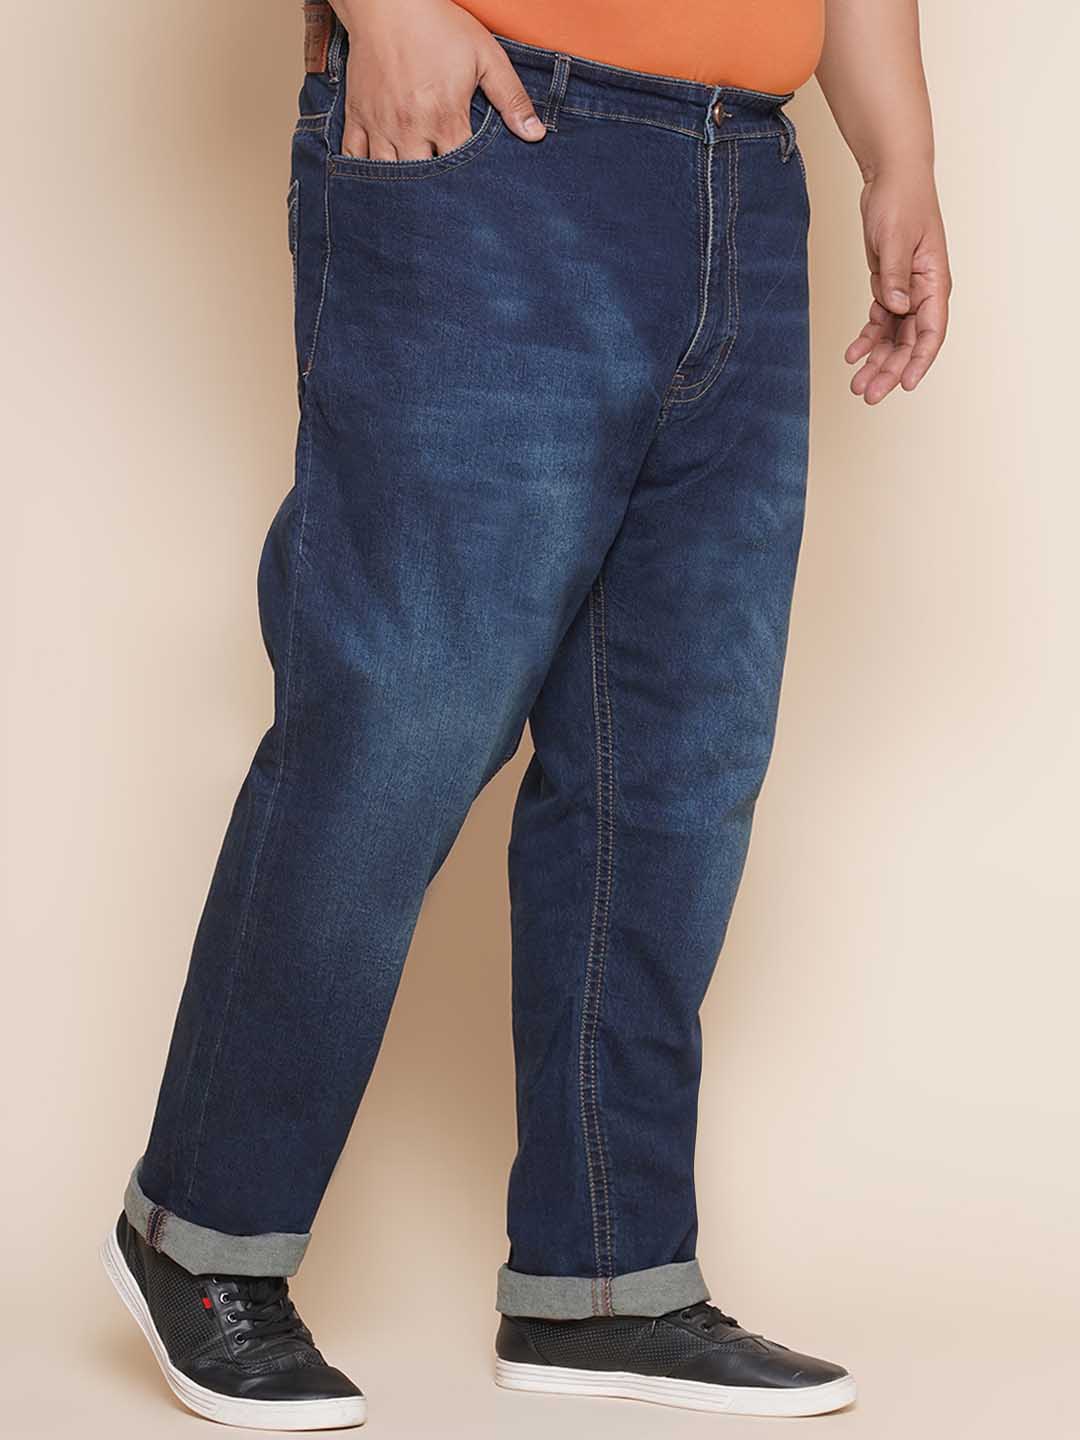 bottomwear/jeans/JPJ27032/jpj27032-3.jpg